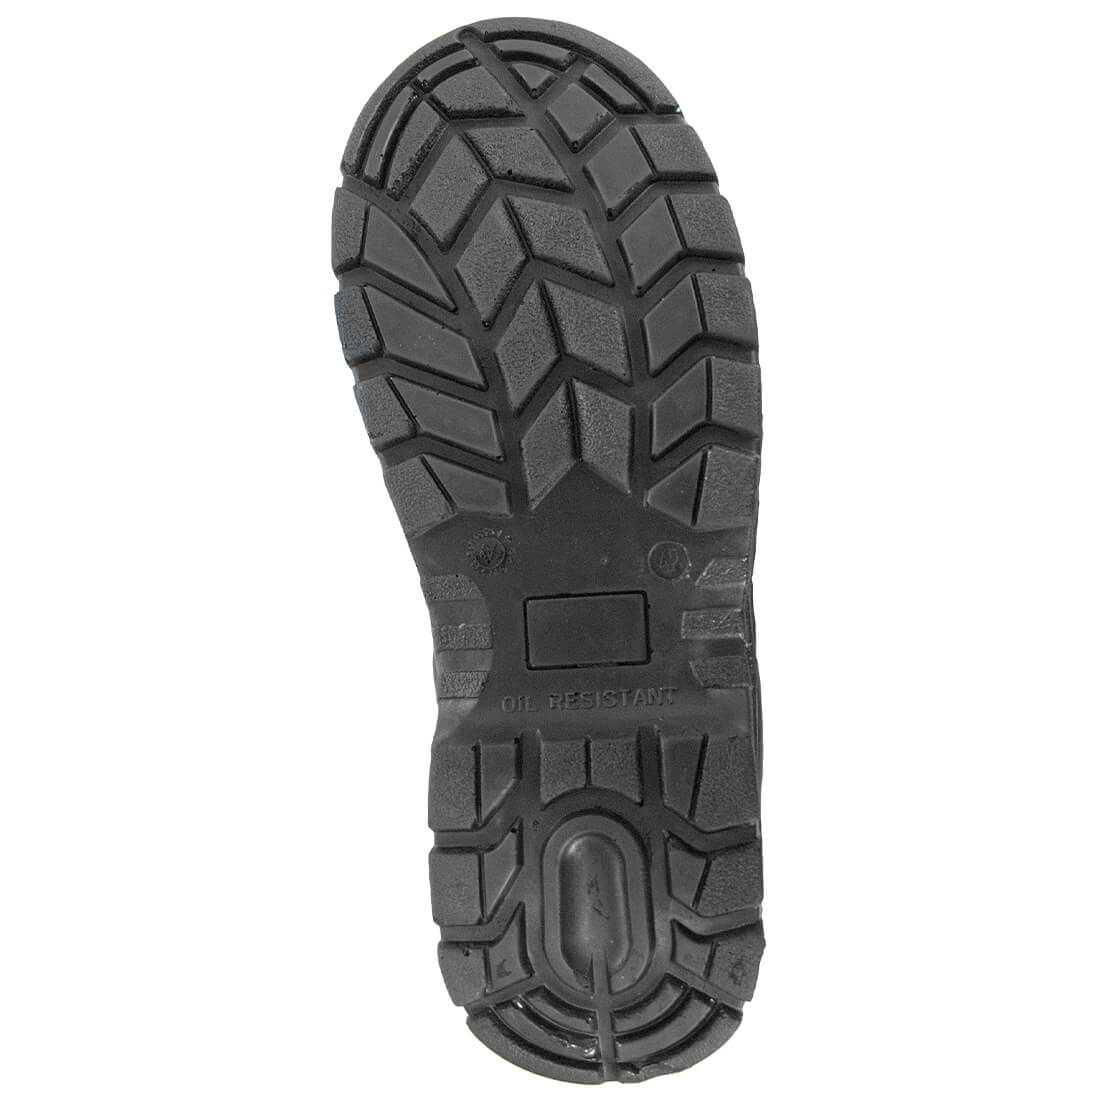 Bocanci de Protectie Compositelite™  S1P - Incaltaminte de protectie | Bocanci, Pantofi, Sandale, Cizme